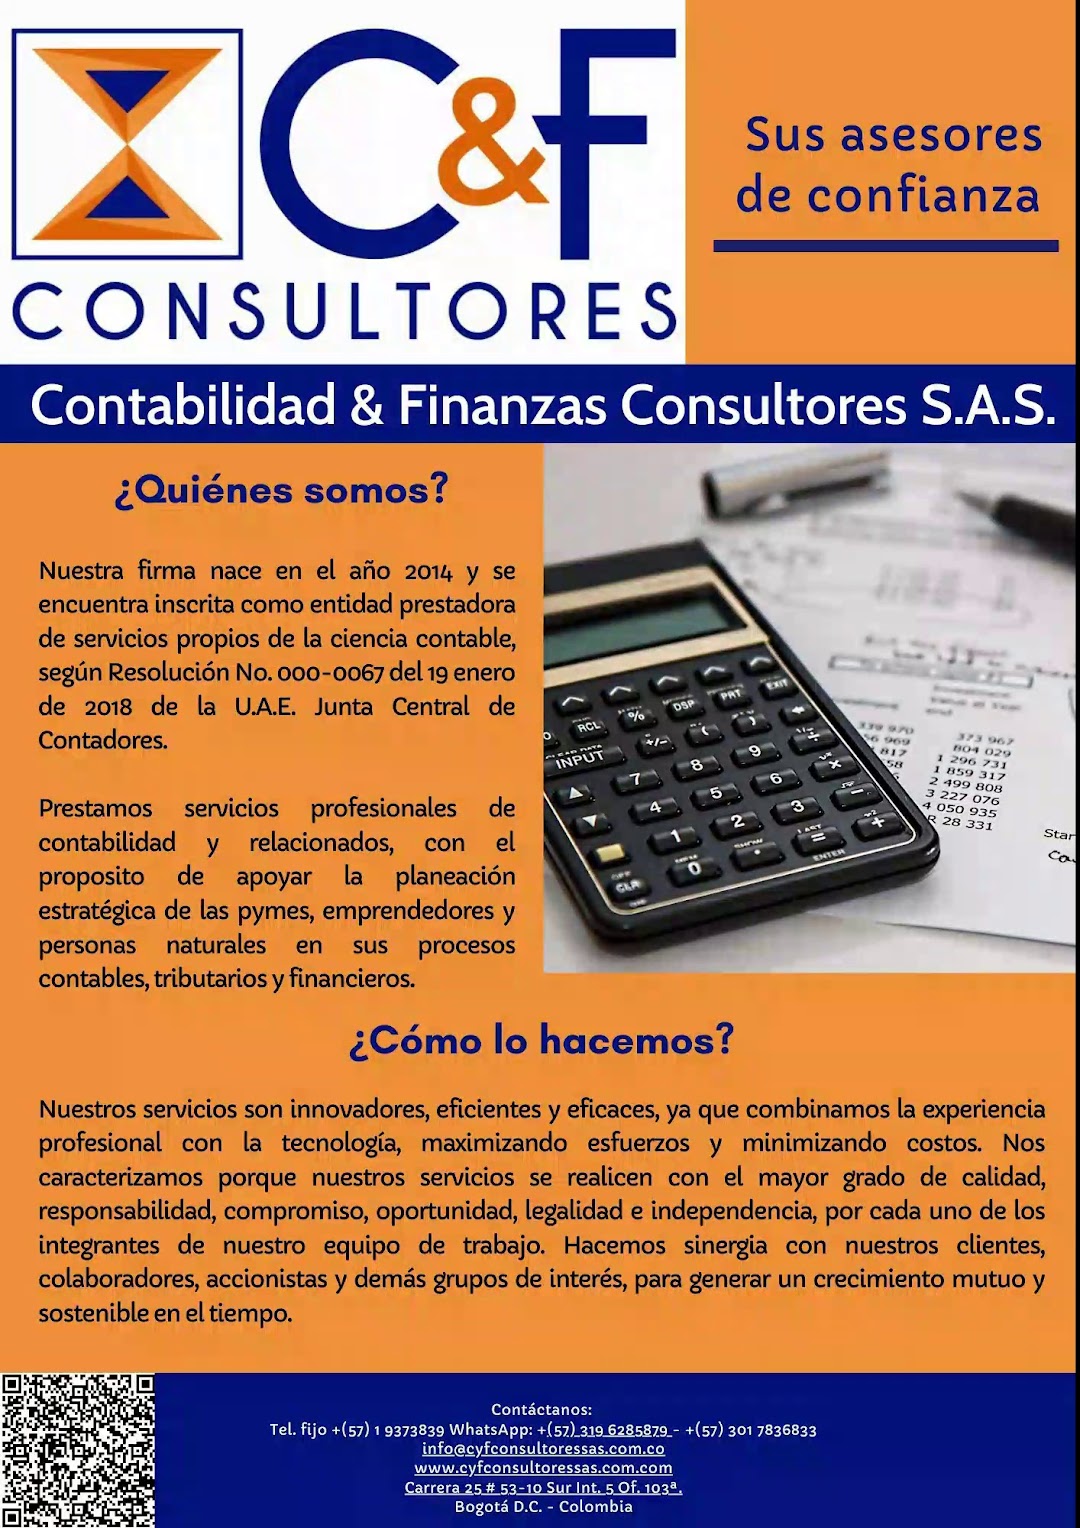 Contabilidad & Finanzas Consultores S.A.S.